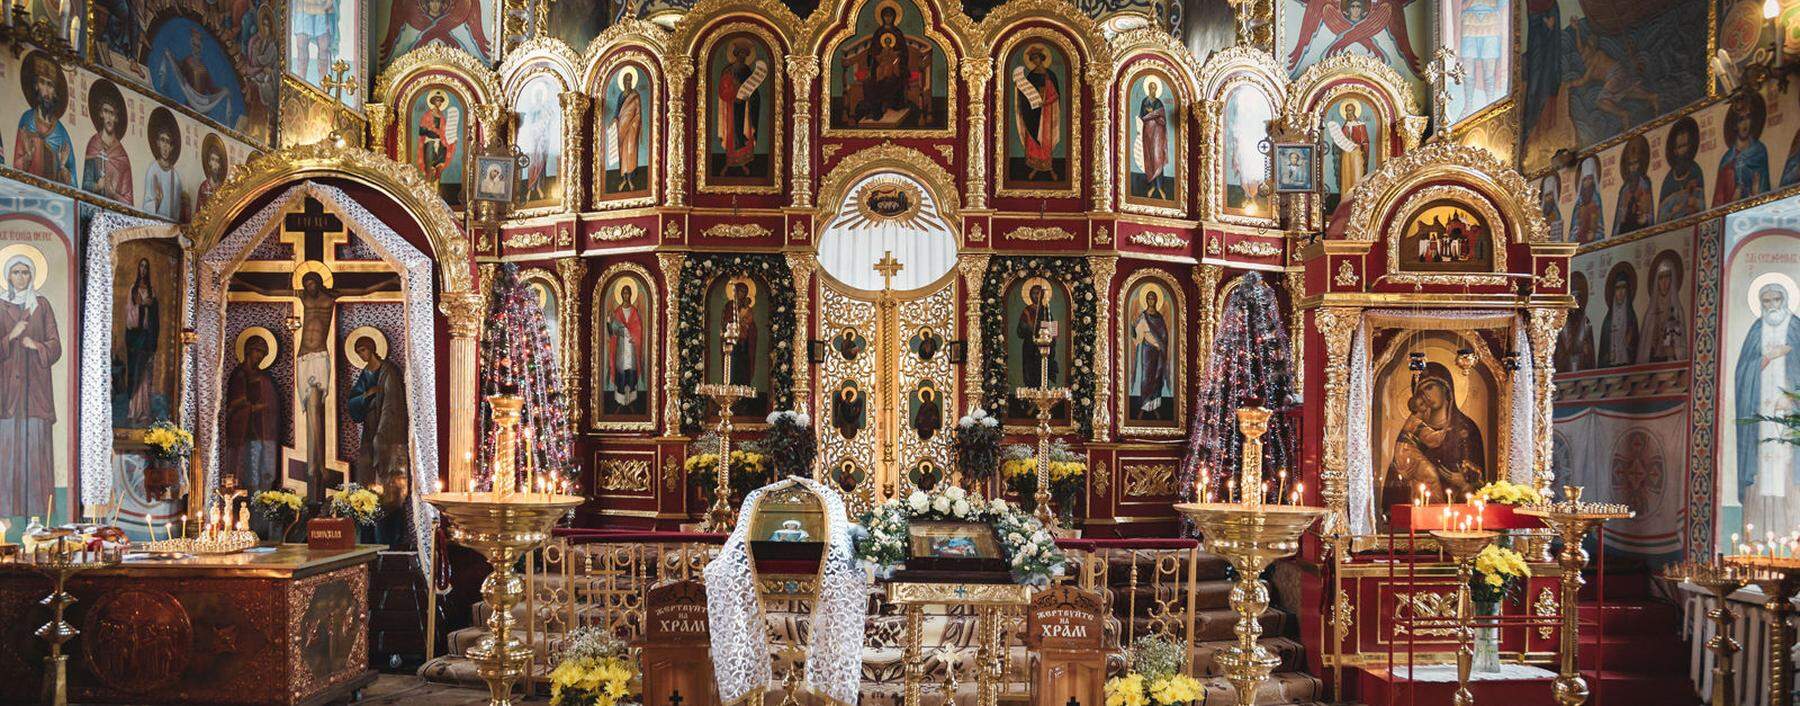 Die weihnachtlich geschmückte orthodoxe Kirche von Odessa (Ukraine, 2005).